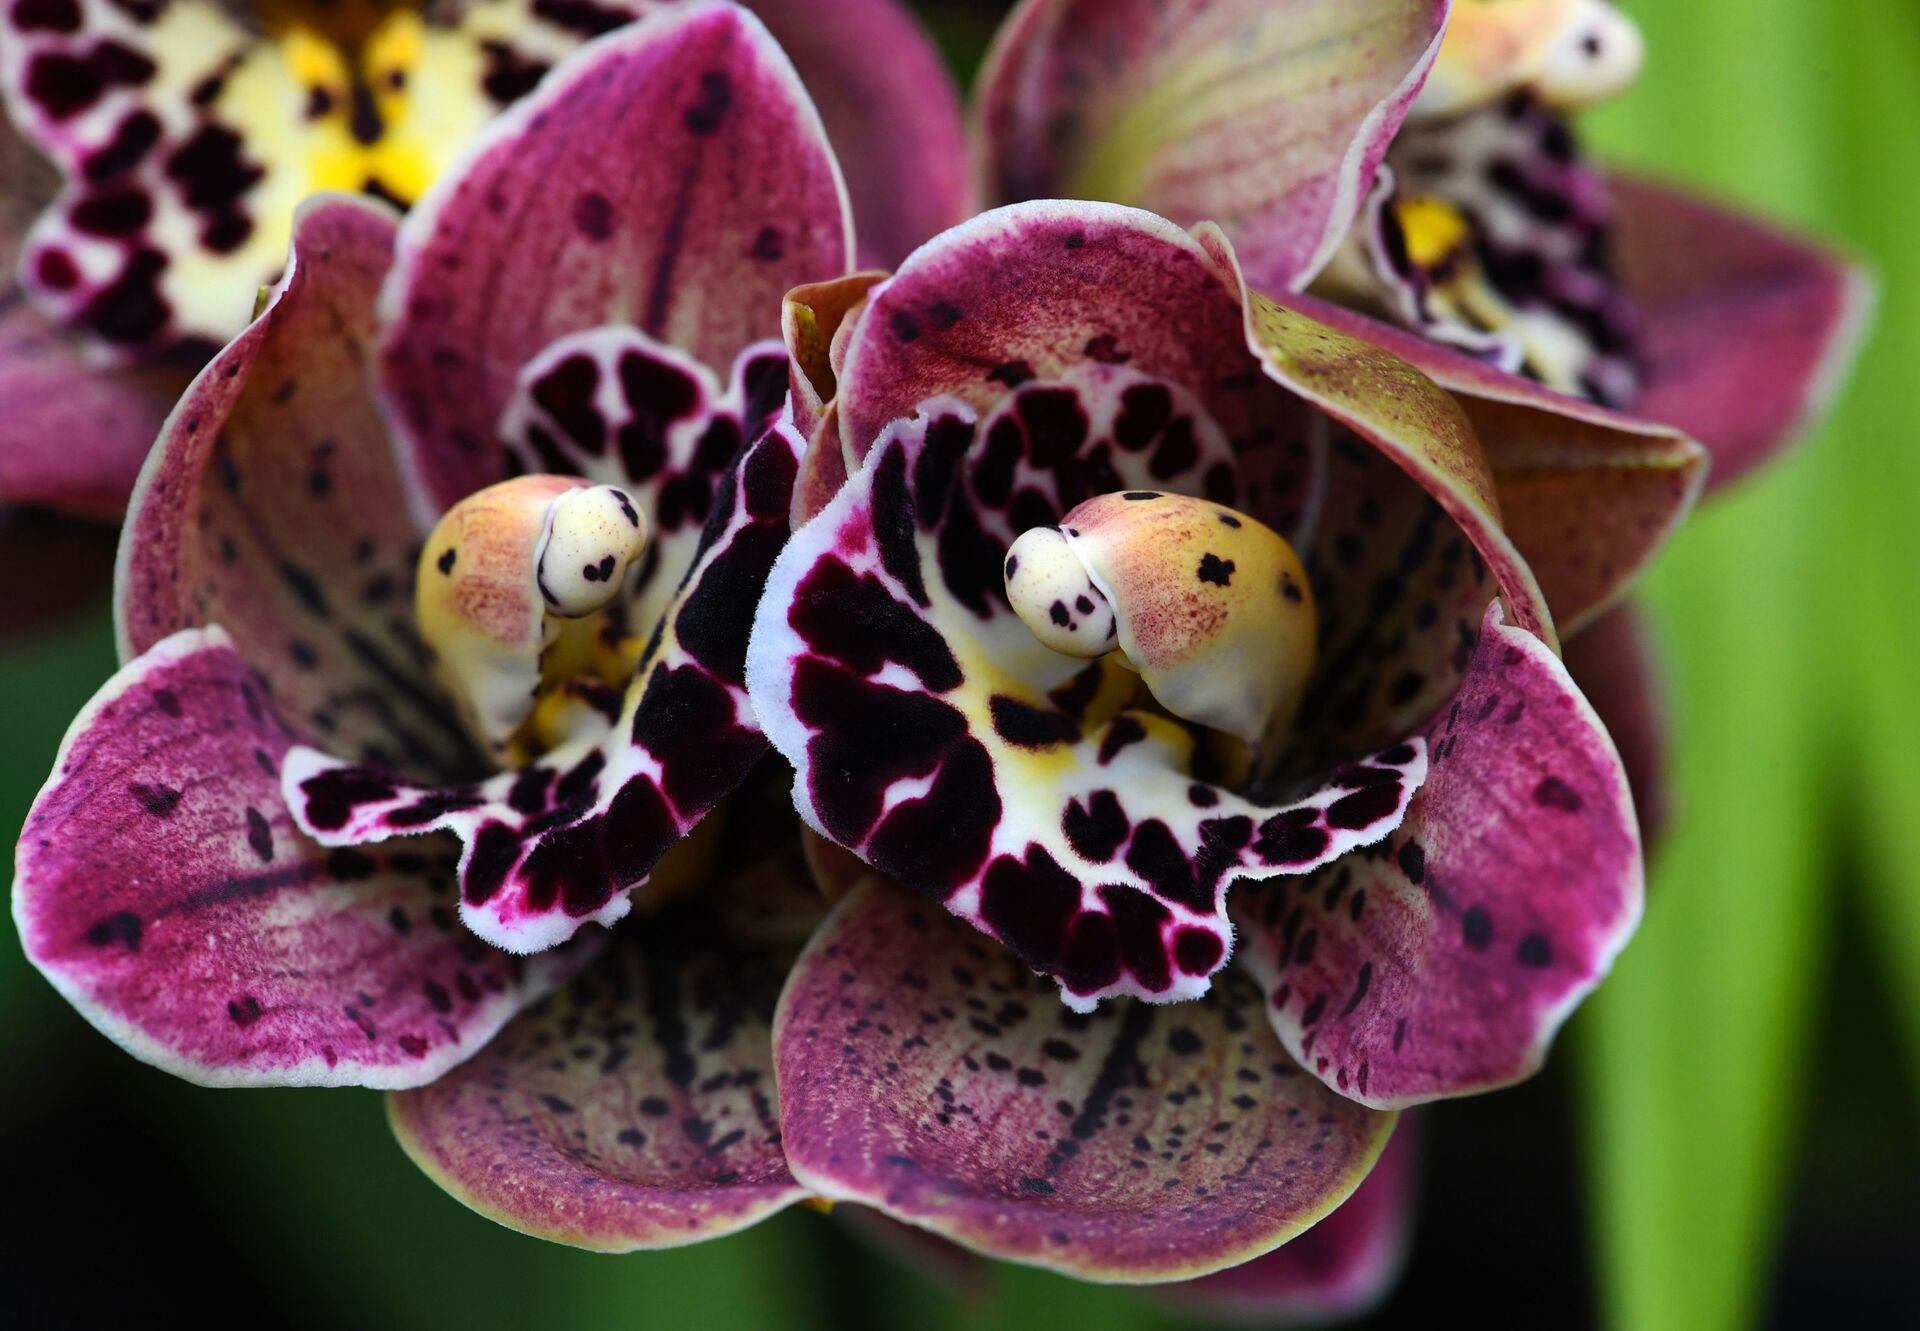 Фото: загадочные орхидеи - цветы романтиков и мистиков - Sputnik Молдова, 1920, 04.04.2021